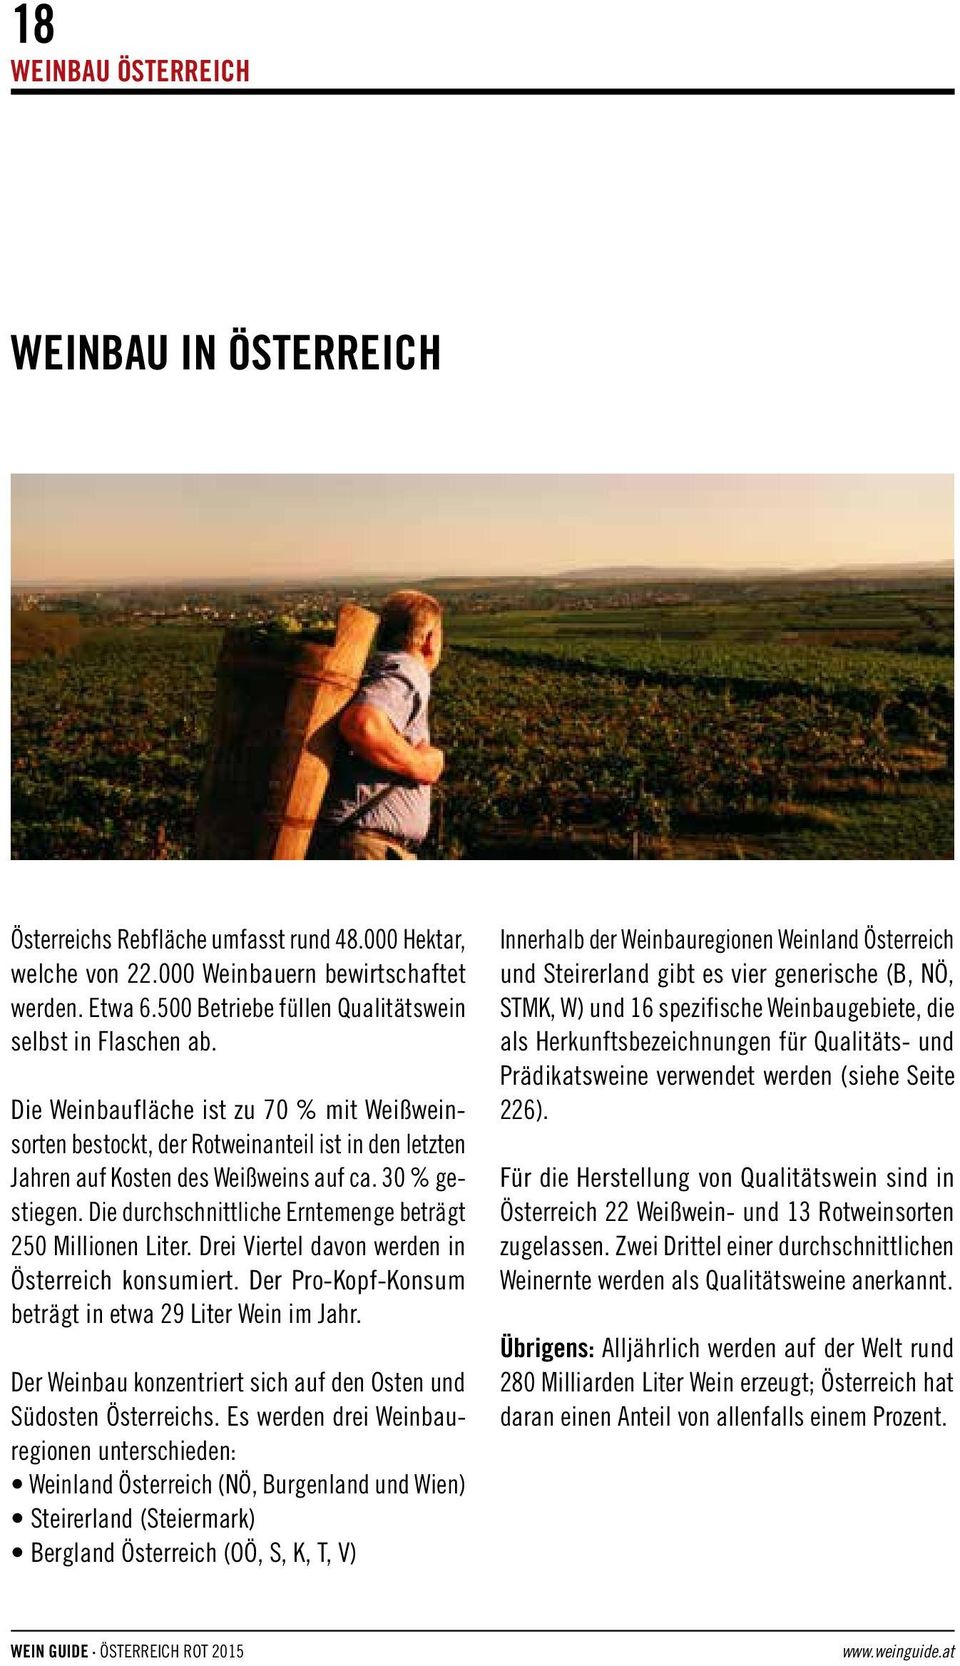 30 % gestiegen. Die durchschnittliche Erntemenge beträgt 250 Millionen Liter. Drei Viertel davon werden in Österreich konsumiert. Der Pro-Kopf-Konsum beträgt in etwa 29 Liter Wein im Jahr.